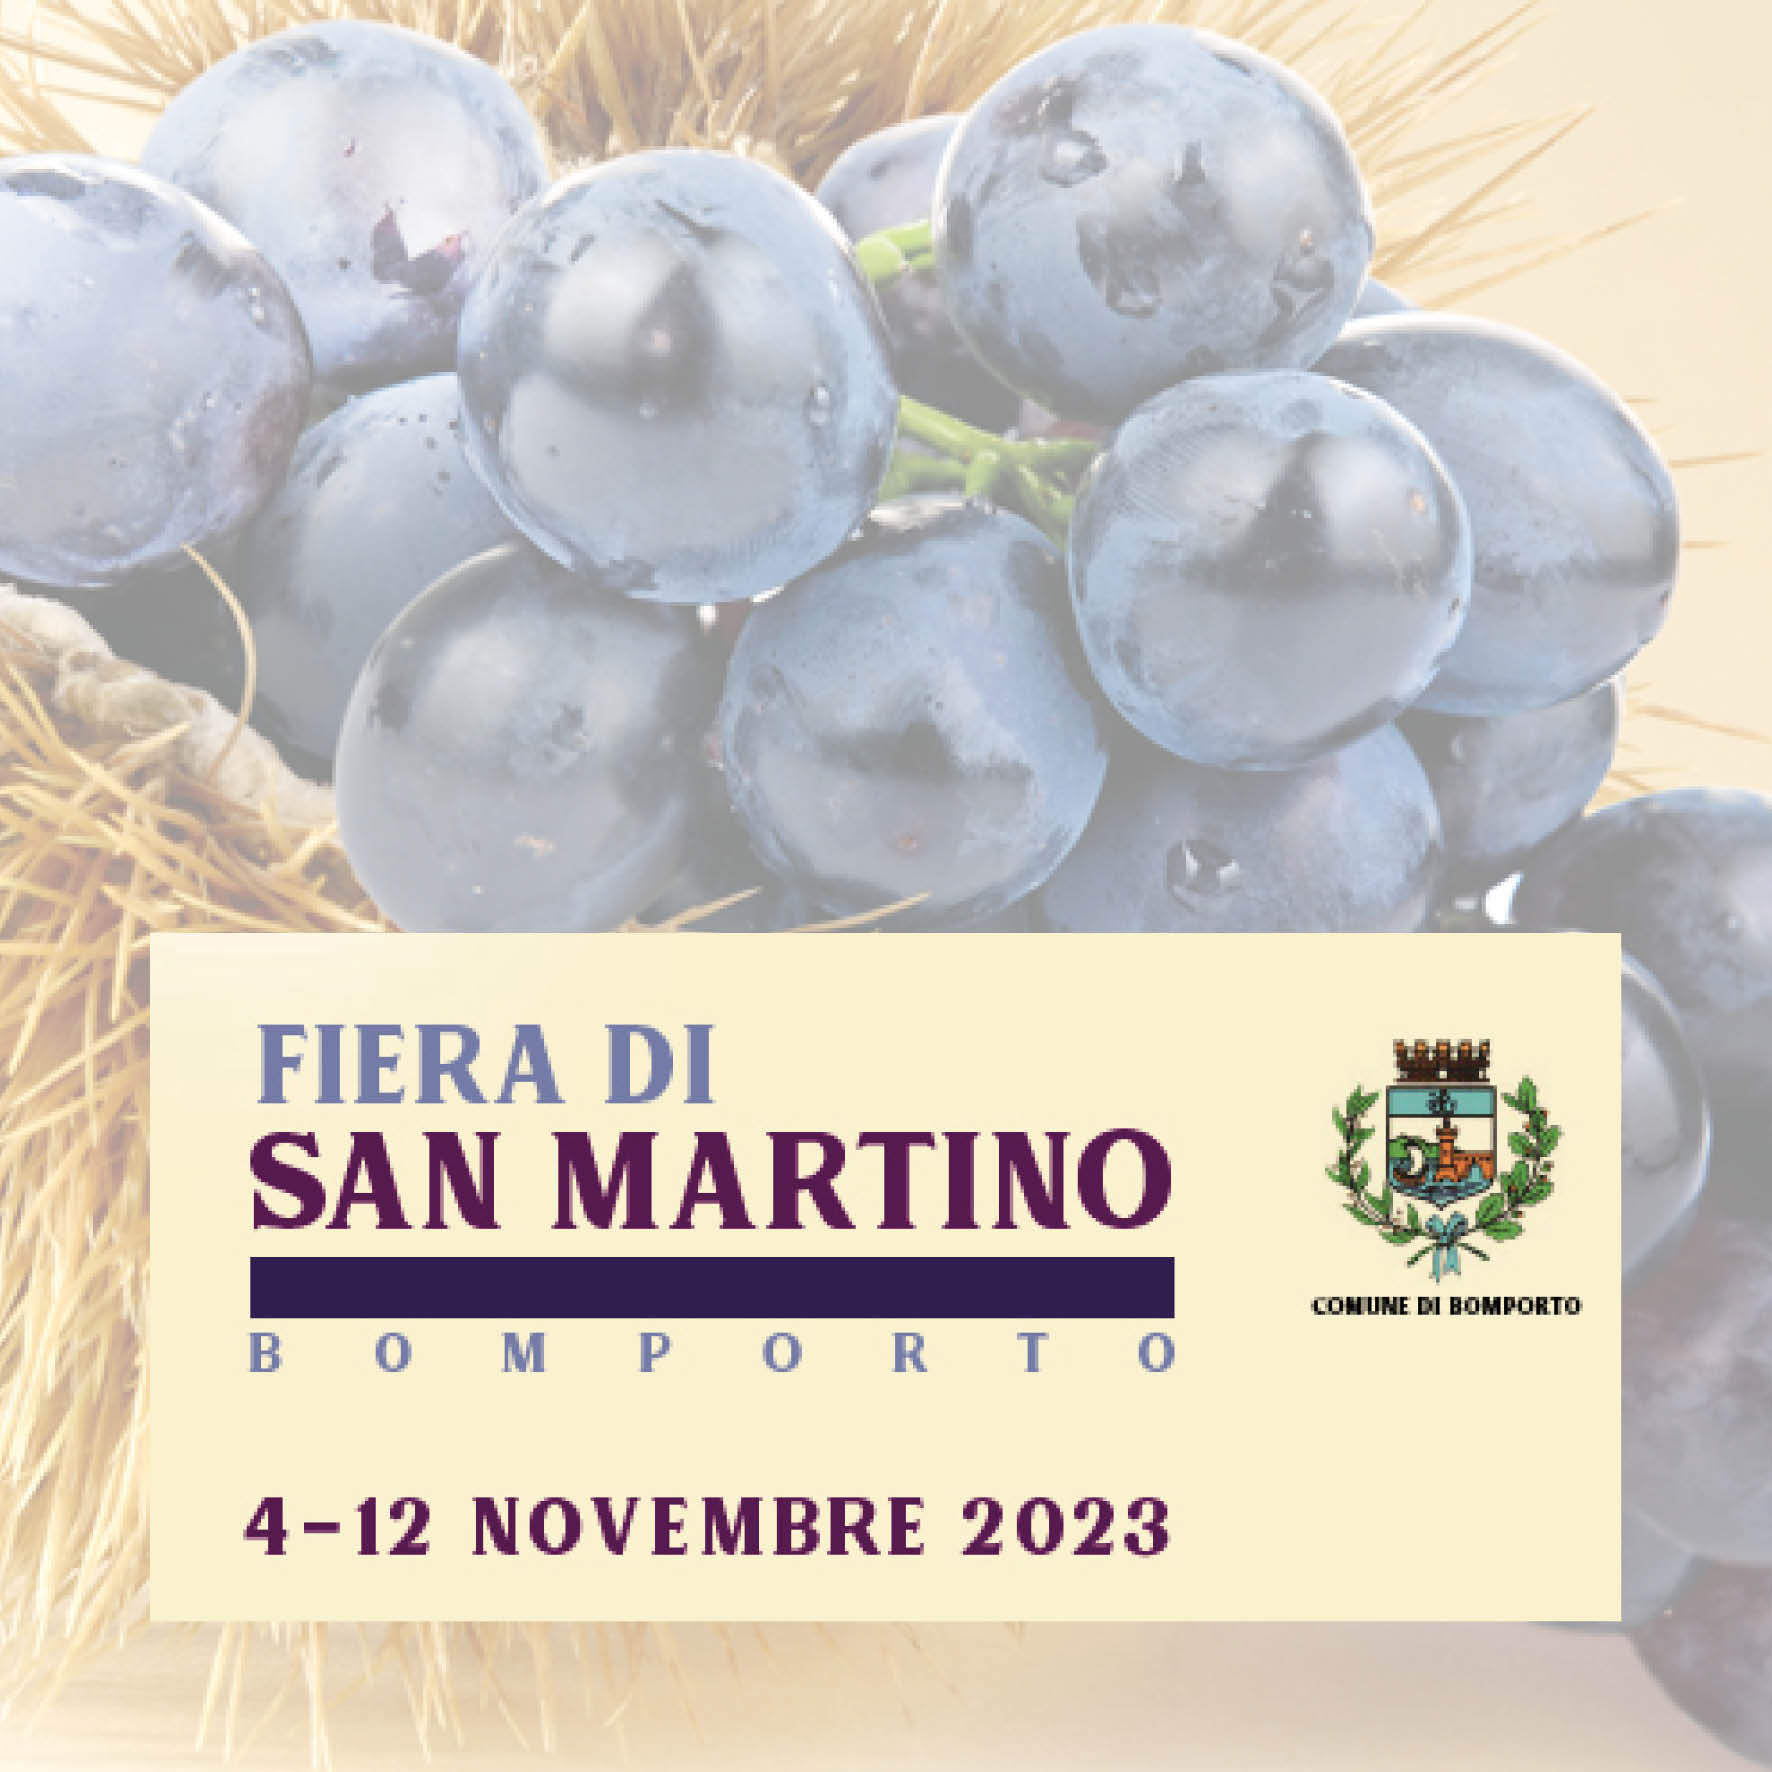 Fiera di San Martino, edizione 2023